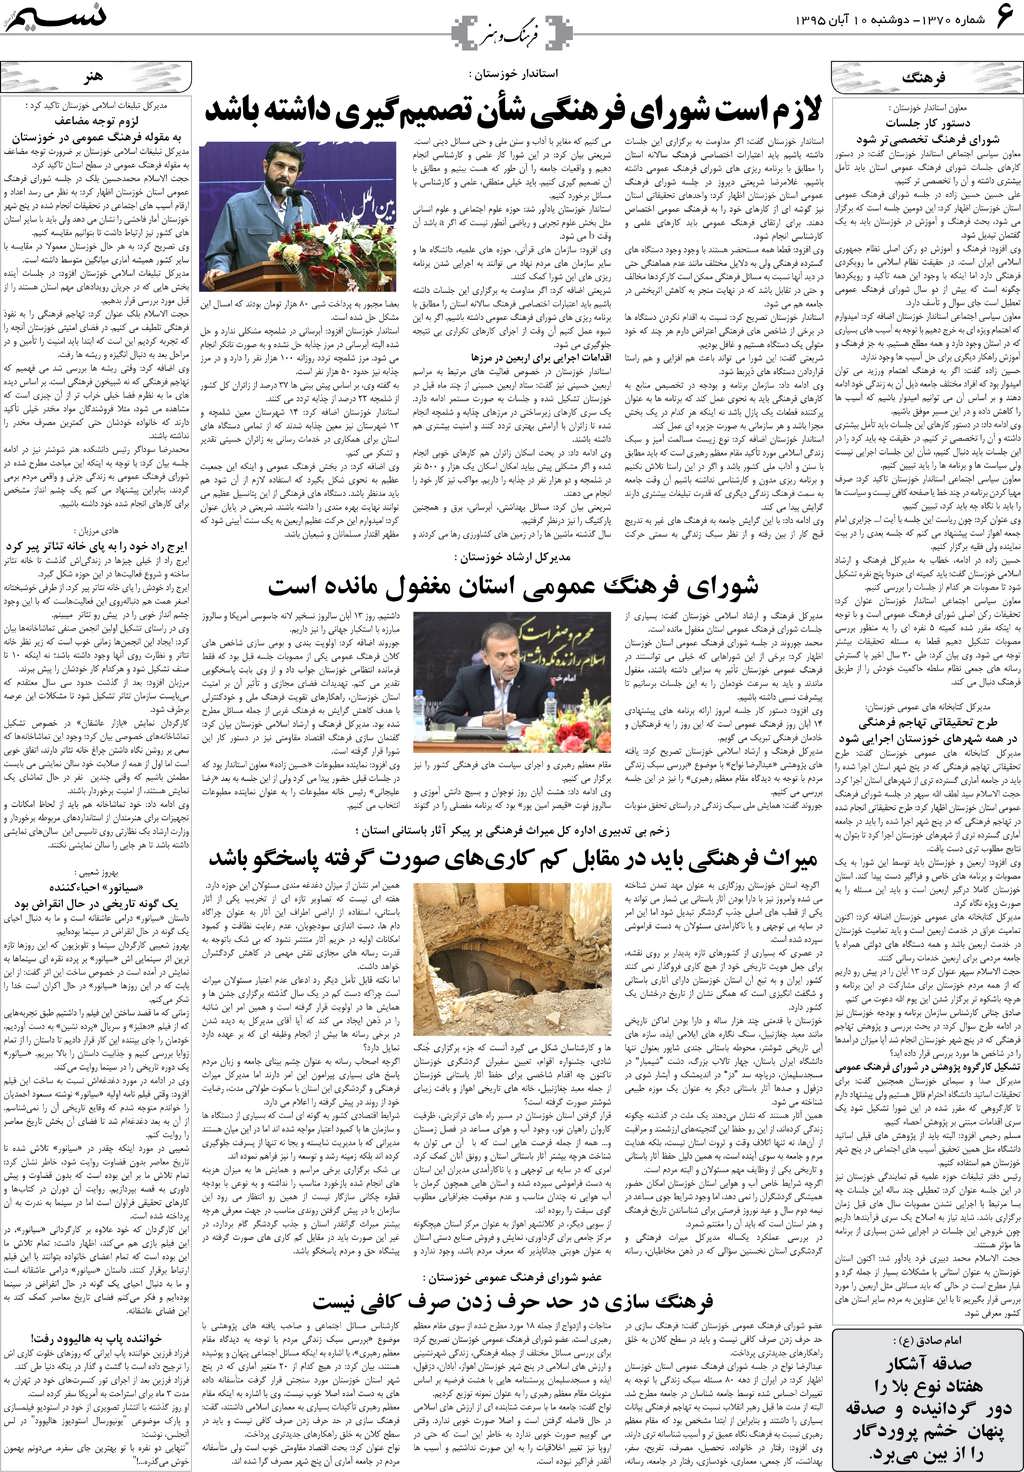 صفحه فرهنگ و هنر روزنامه نسیم شماره 1370